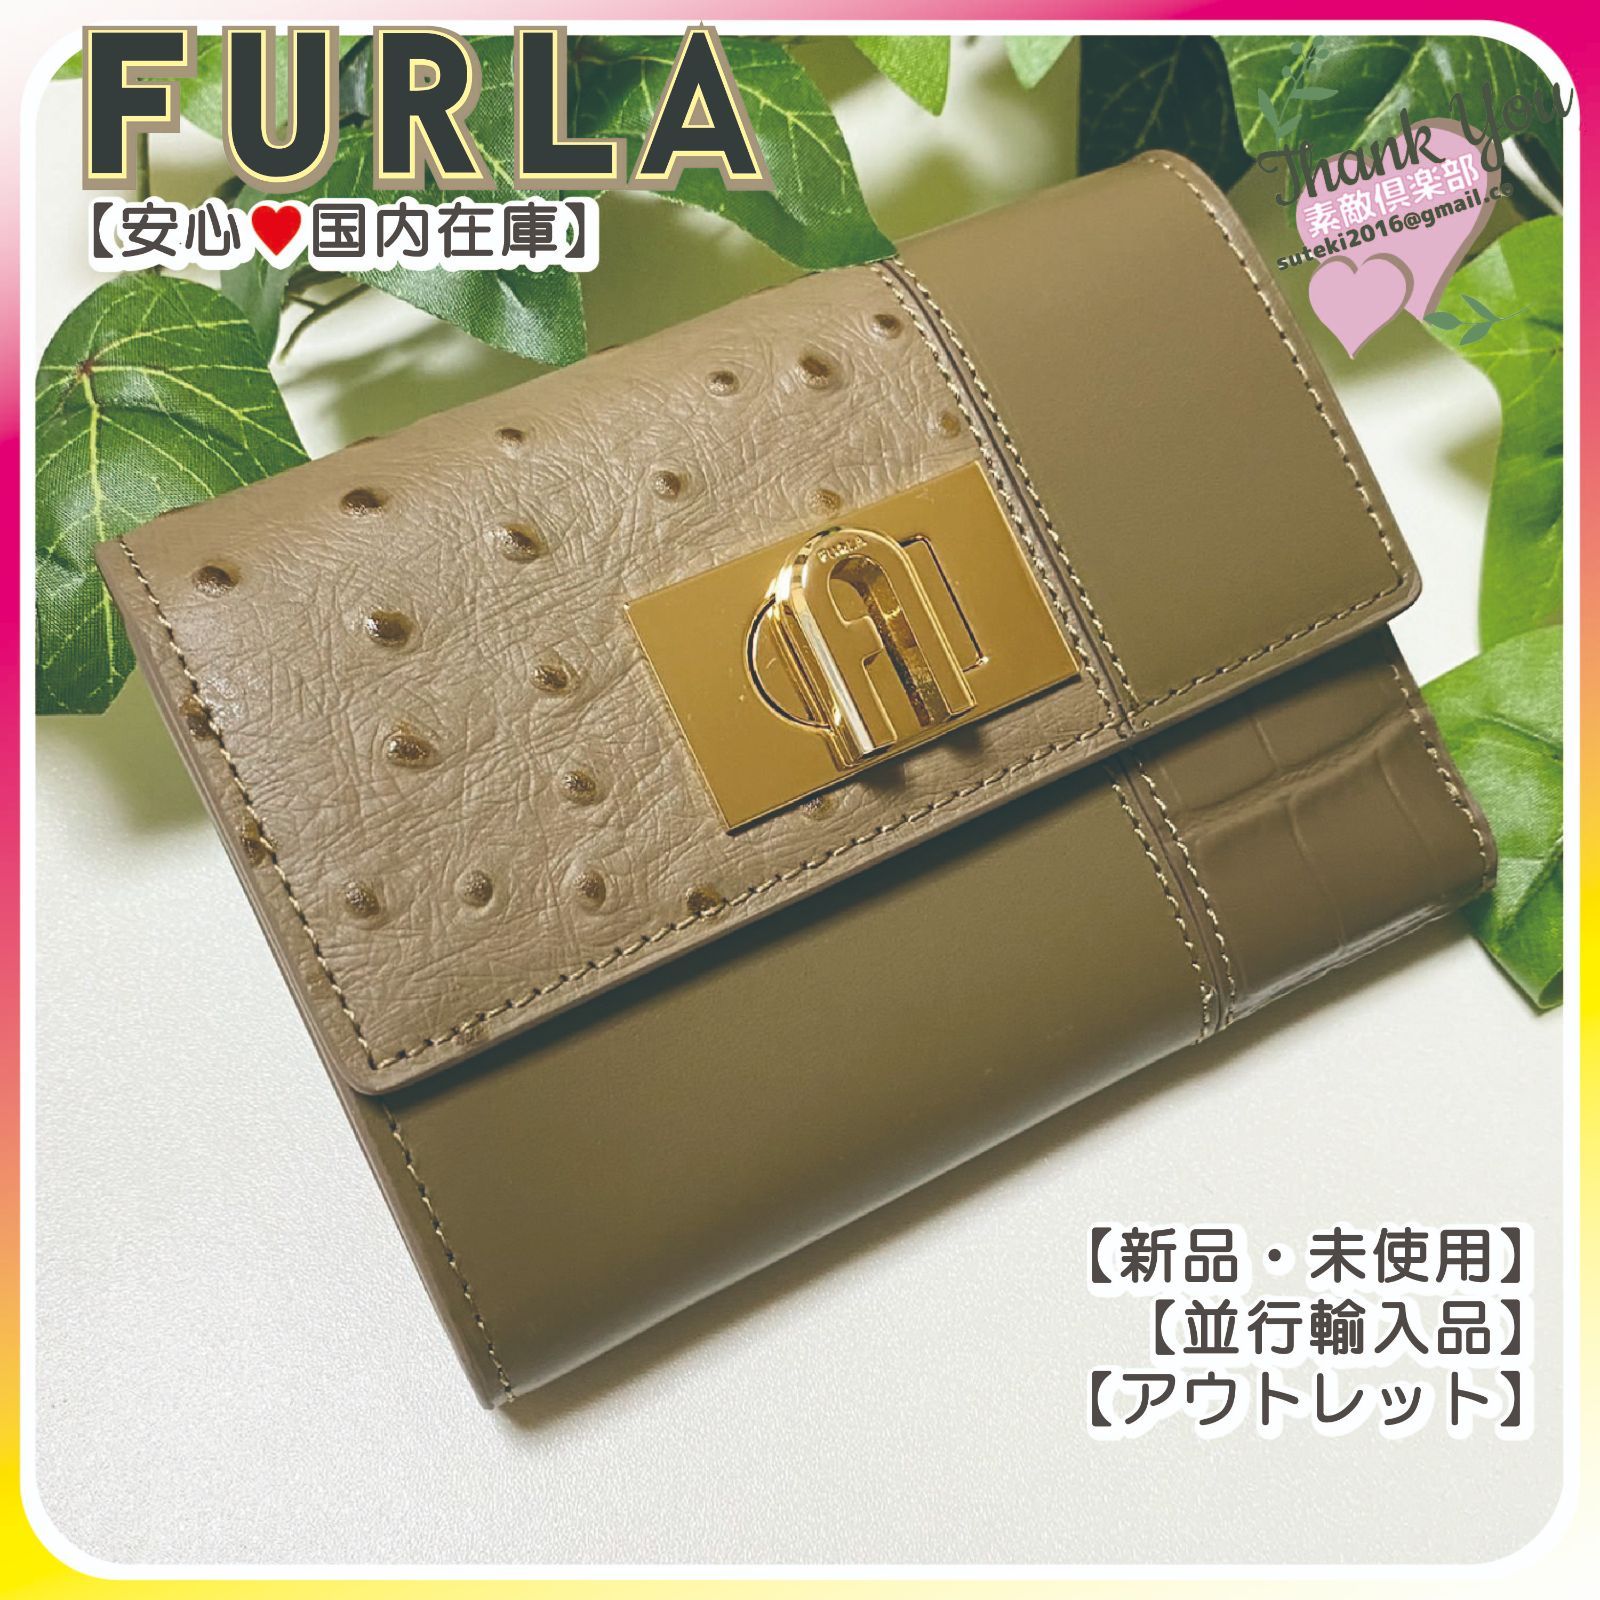 FURLA 三つ折り財布 カーキブラウン系-